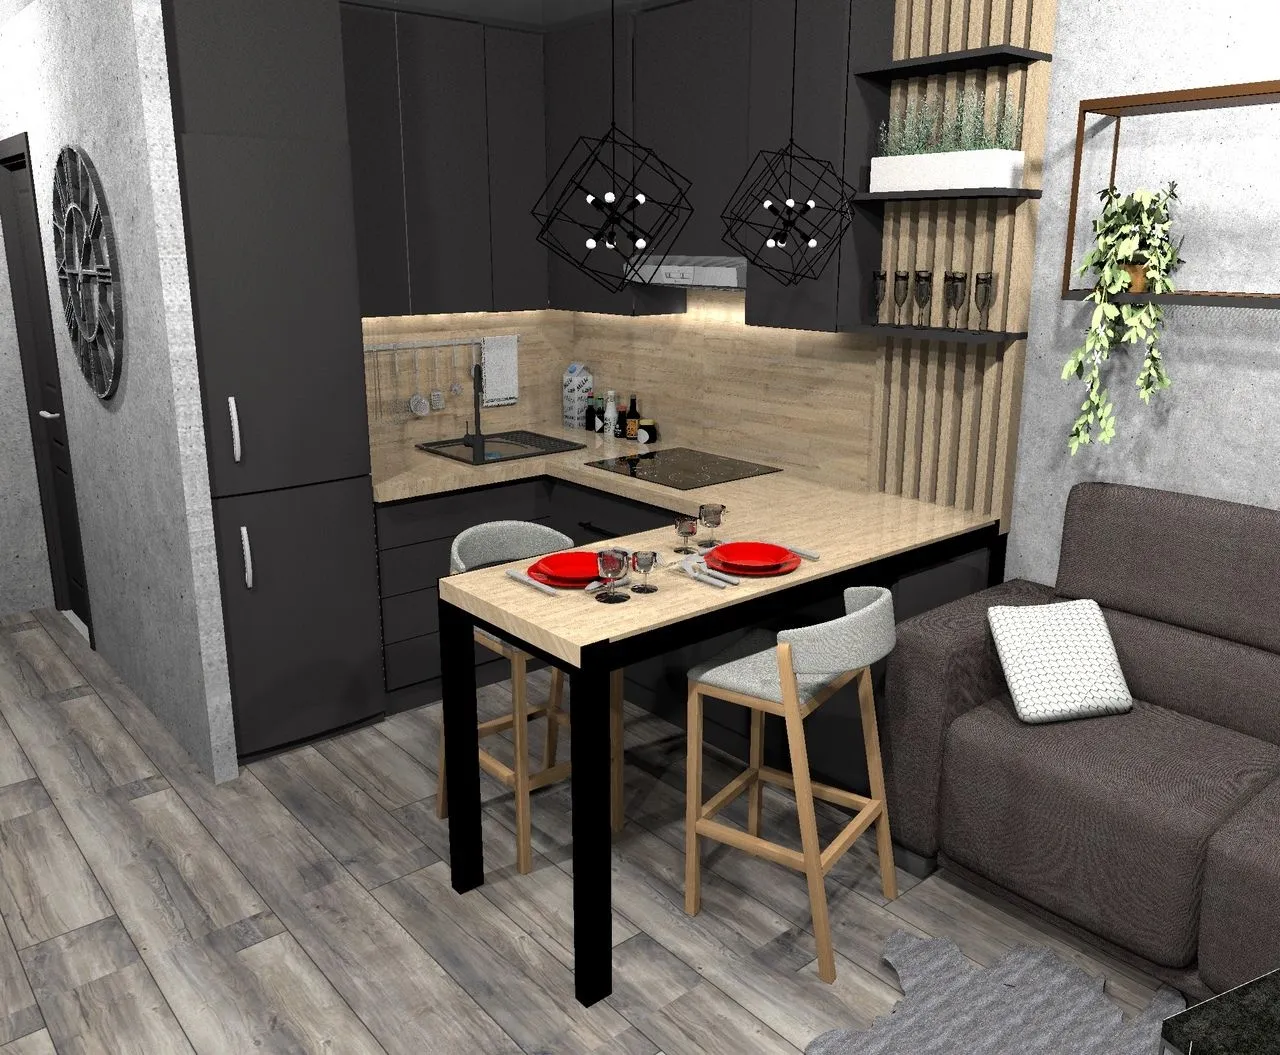 Планировка интерьера кухни-гостиной 18 кв.м для разных форм помещений